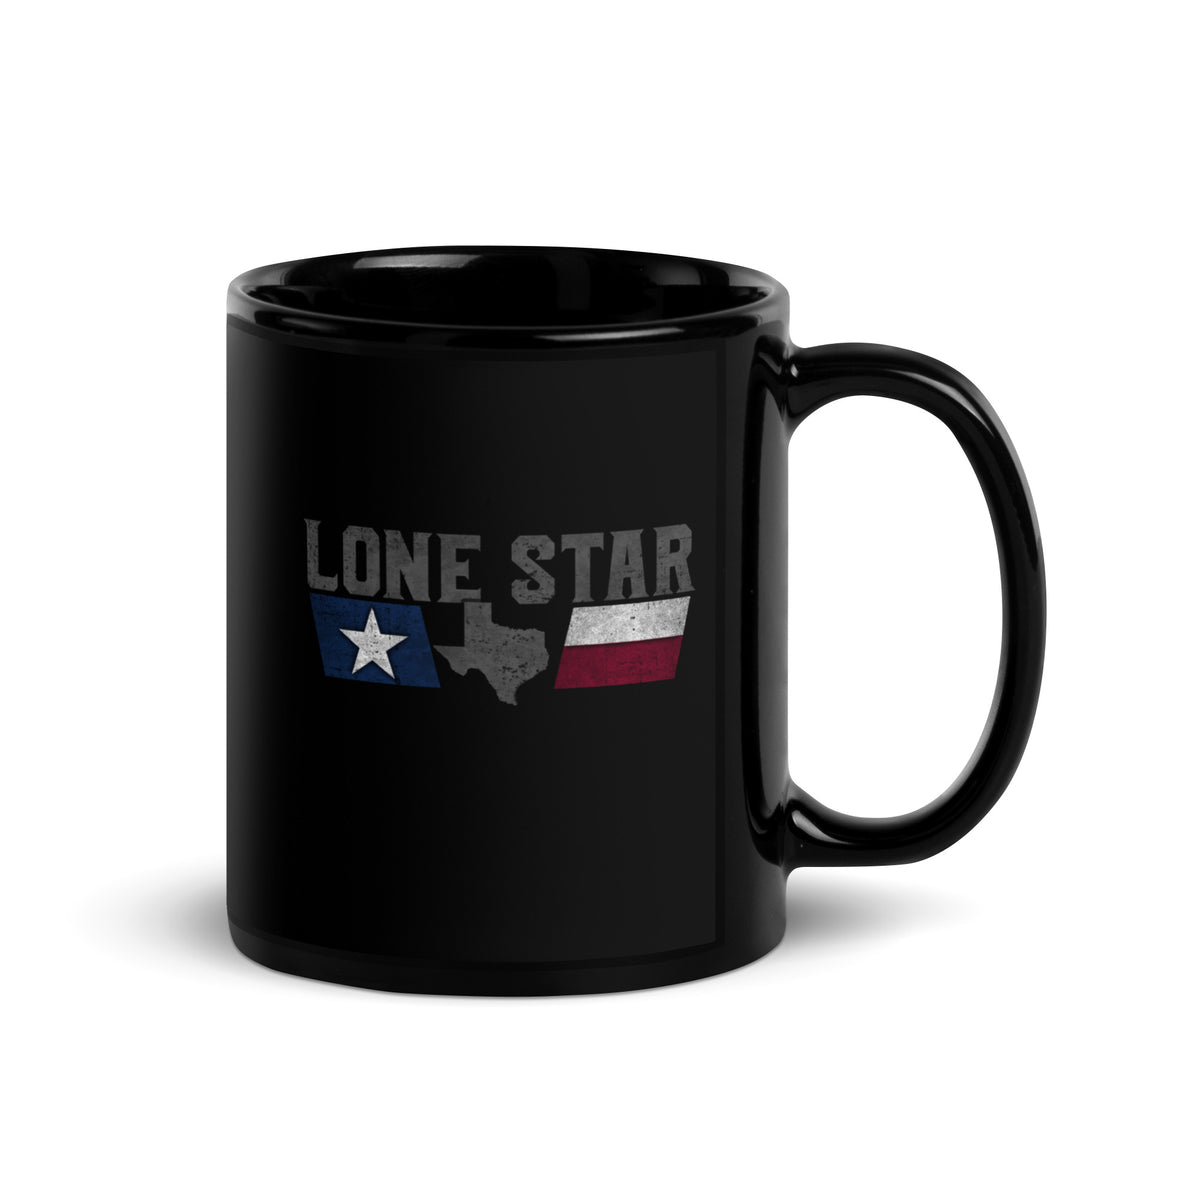 Lone Star Mug